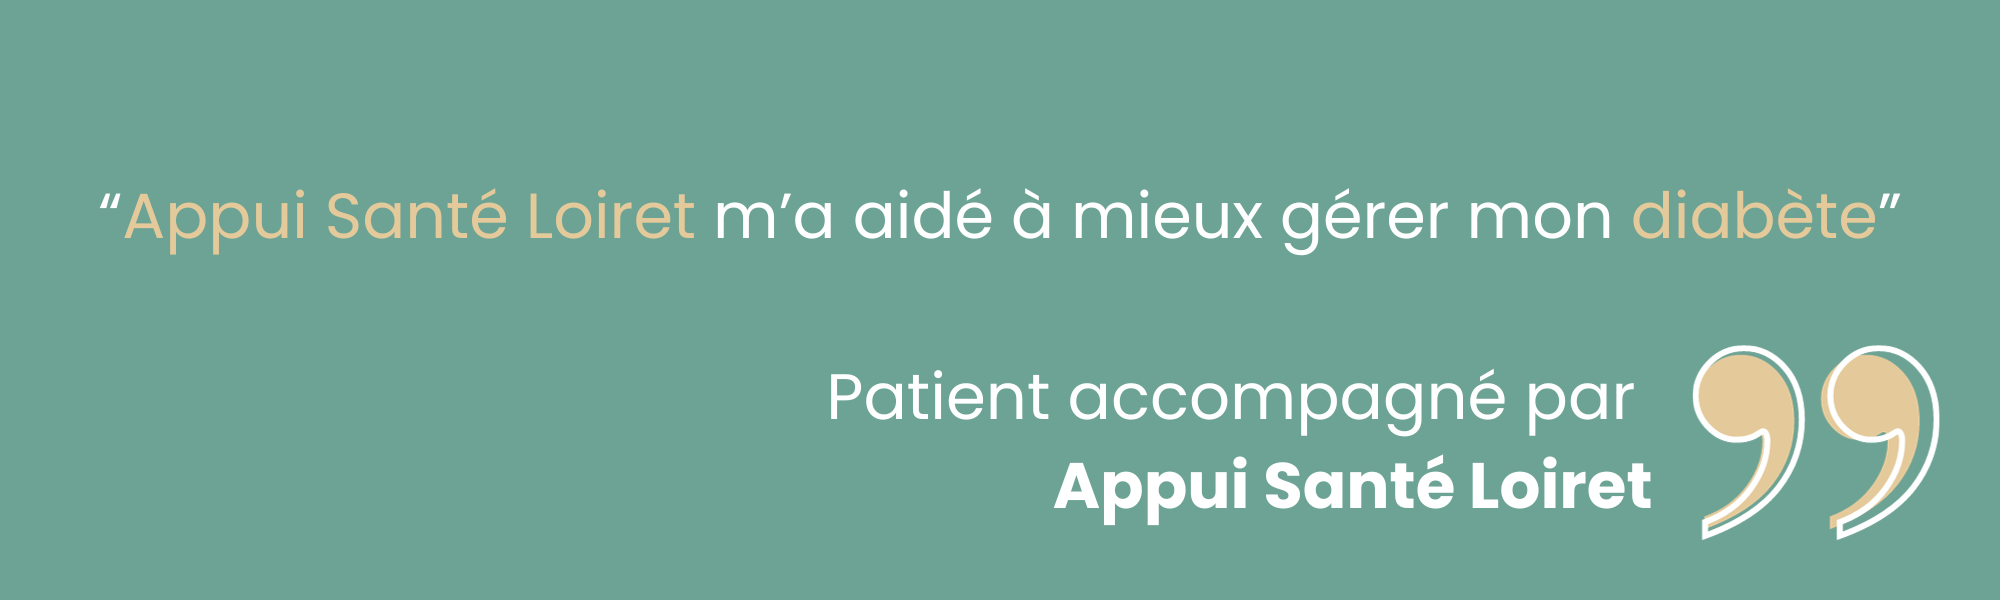 Temoignage patient diabete Appui Santé Loiret 3